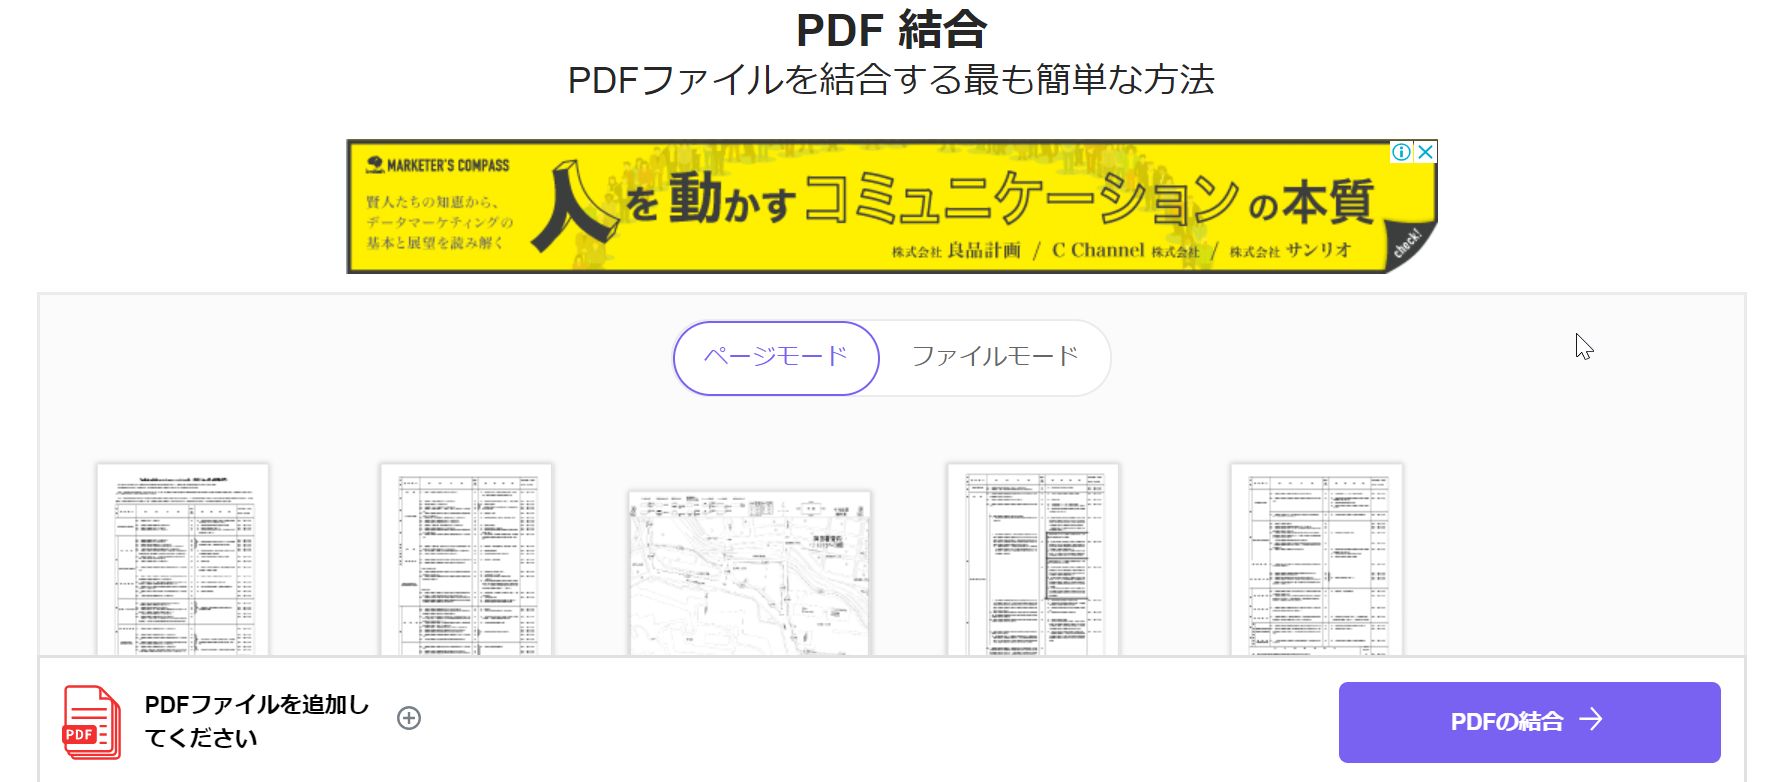 PDFファイルをより便利に活用できる PDFをWord Excelなど様々な形式に変換 結合 圧縮 分割 保護 ロック解除もできる高機能ソフト  Apower PDFコンバーター 人気